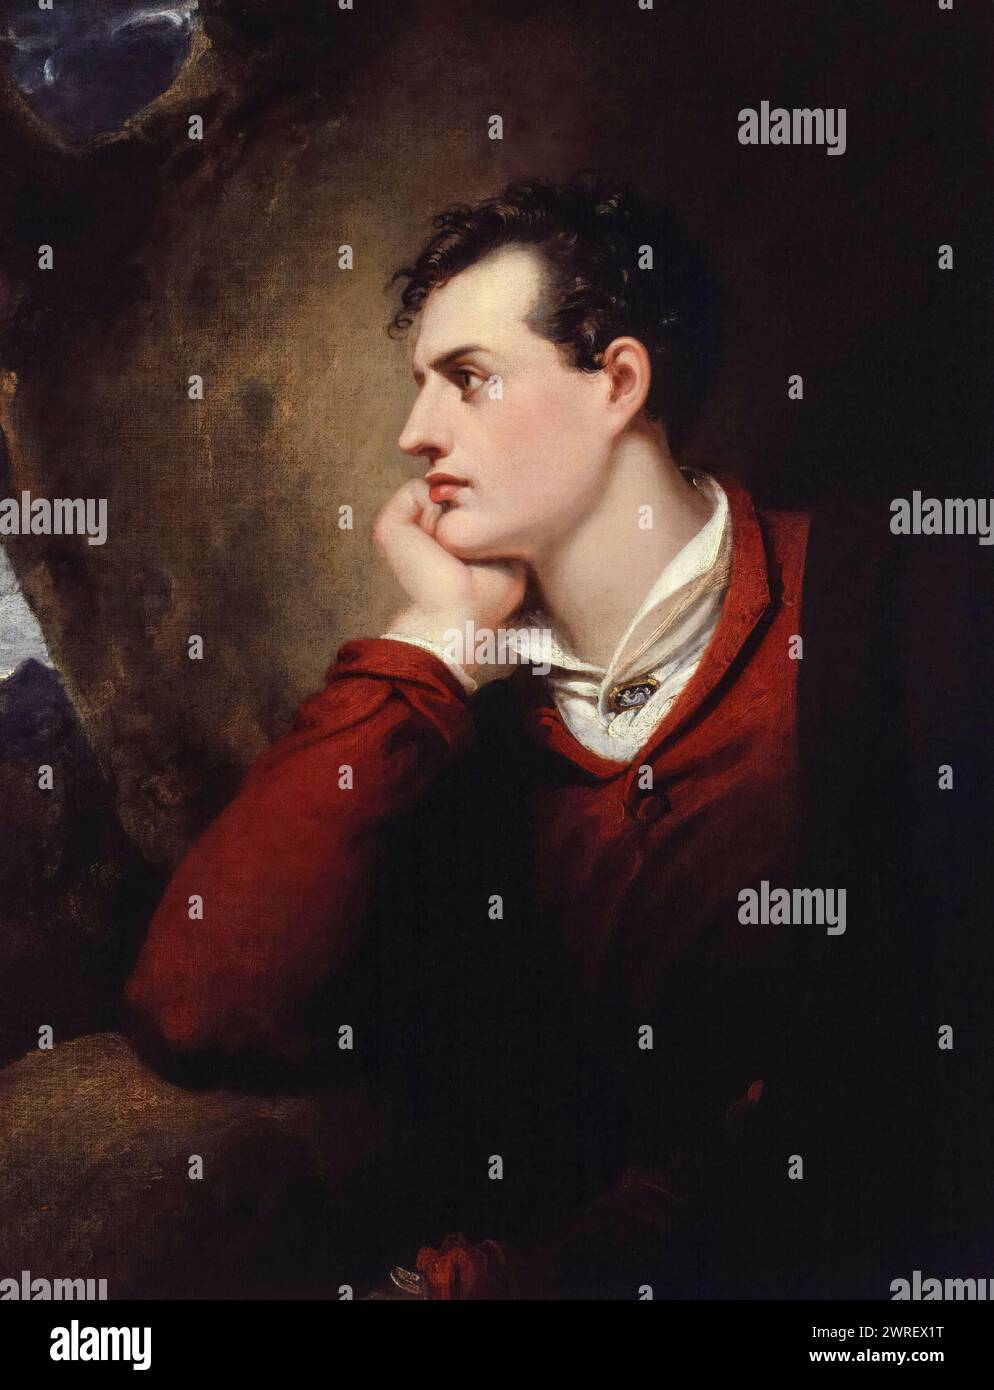 Lord Byron. George Gordon Byron, 6e baron Byron (1788-1824), poète romantique anglais, portrait peint à l'huile sur toile par Richard Westall, 1813 Banque D'Images